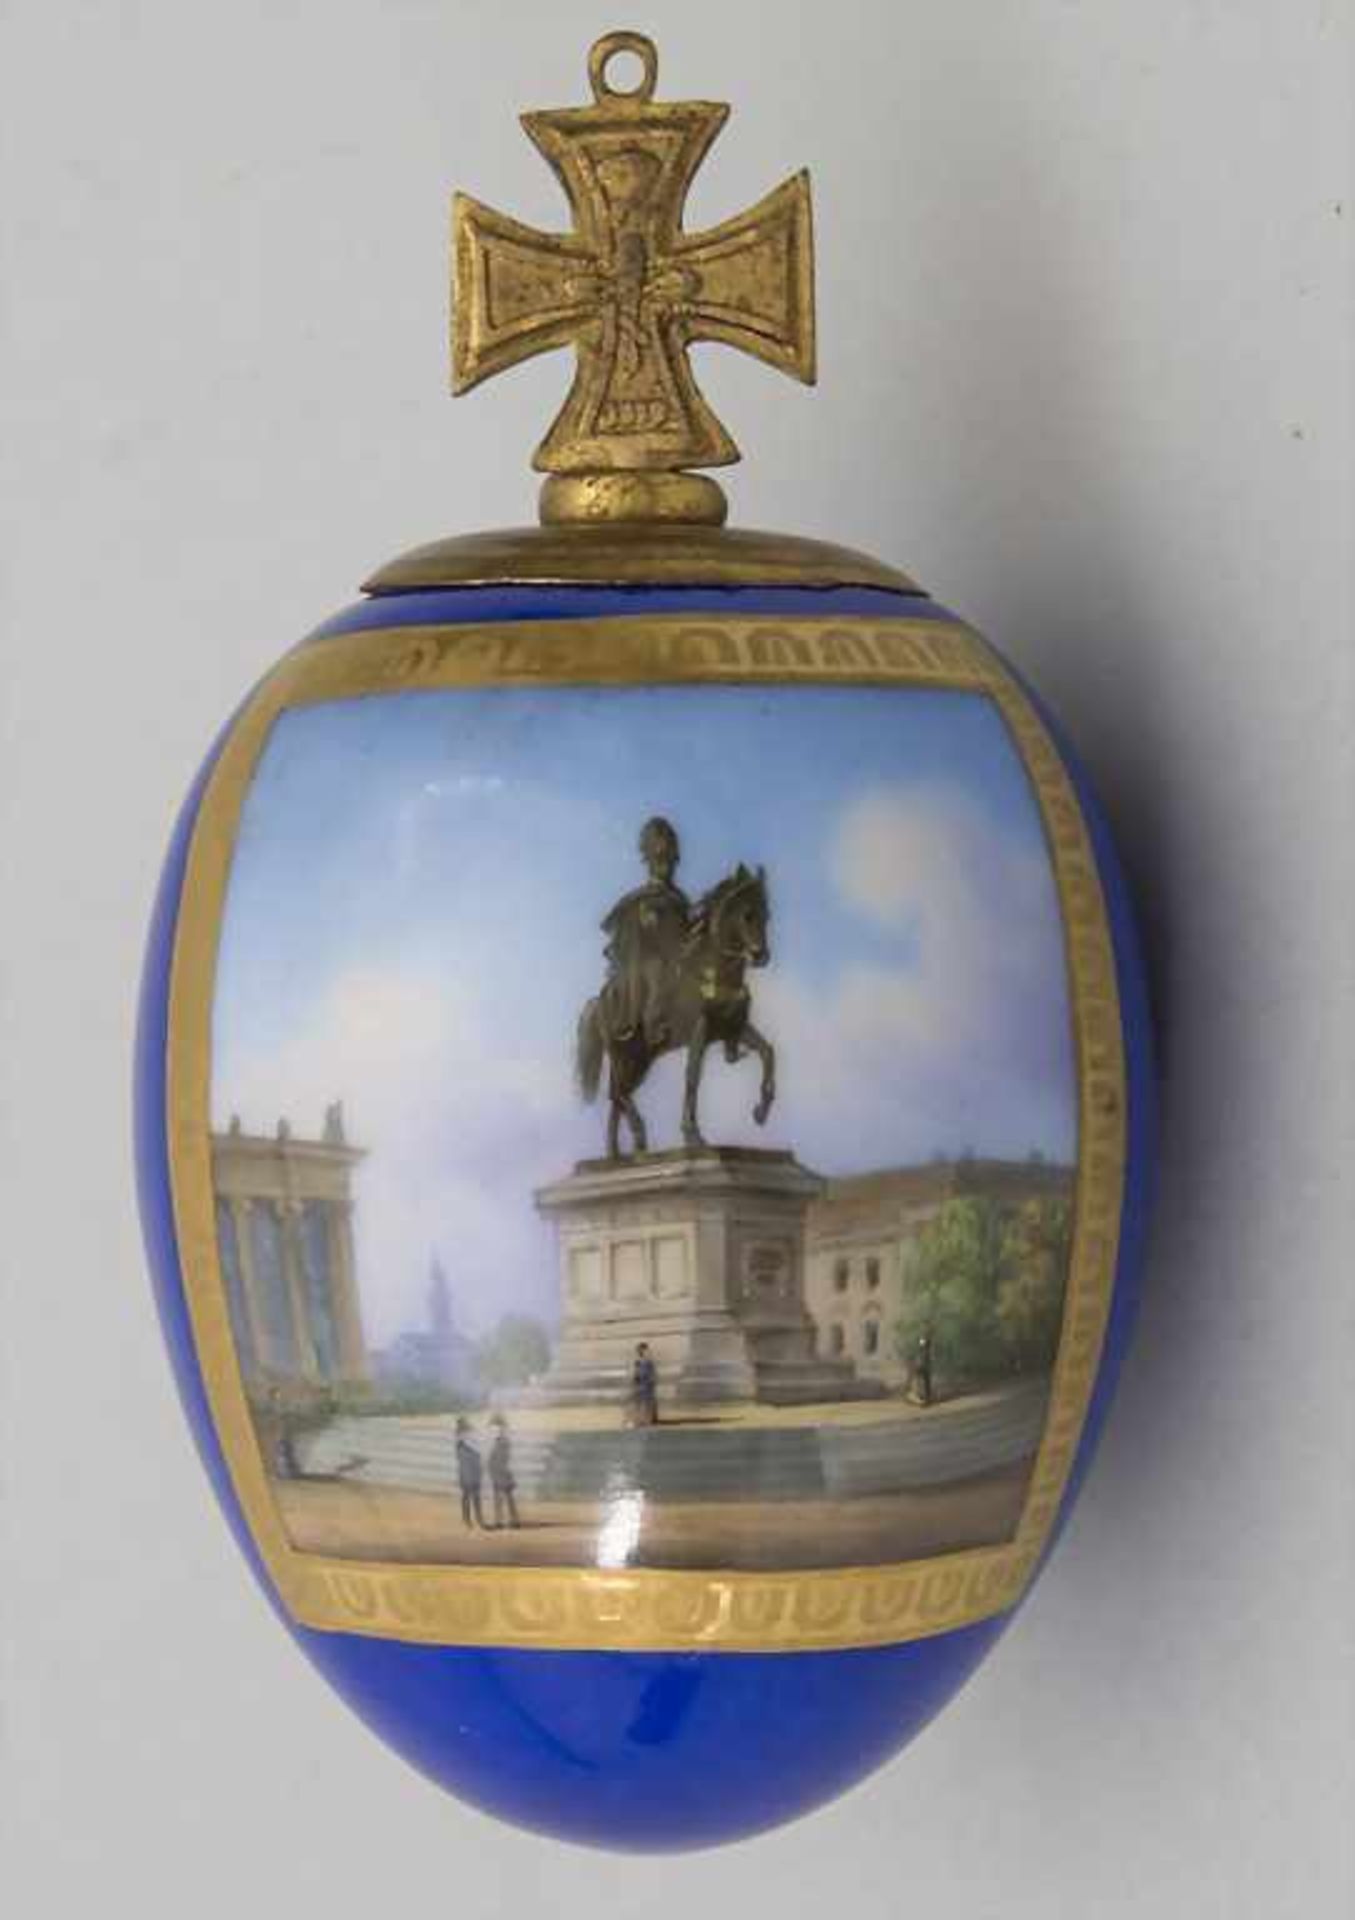 Porzellanei mit Reiterstandbild König Friedrich Wilhelm III / A porcelain egg with equestrian statue